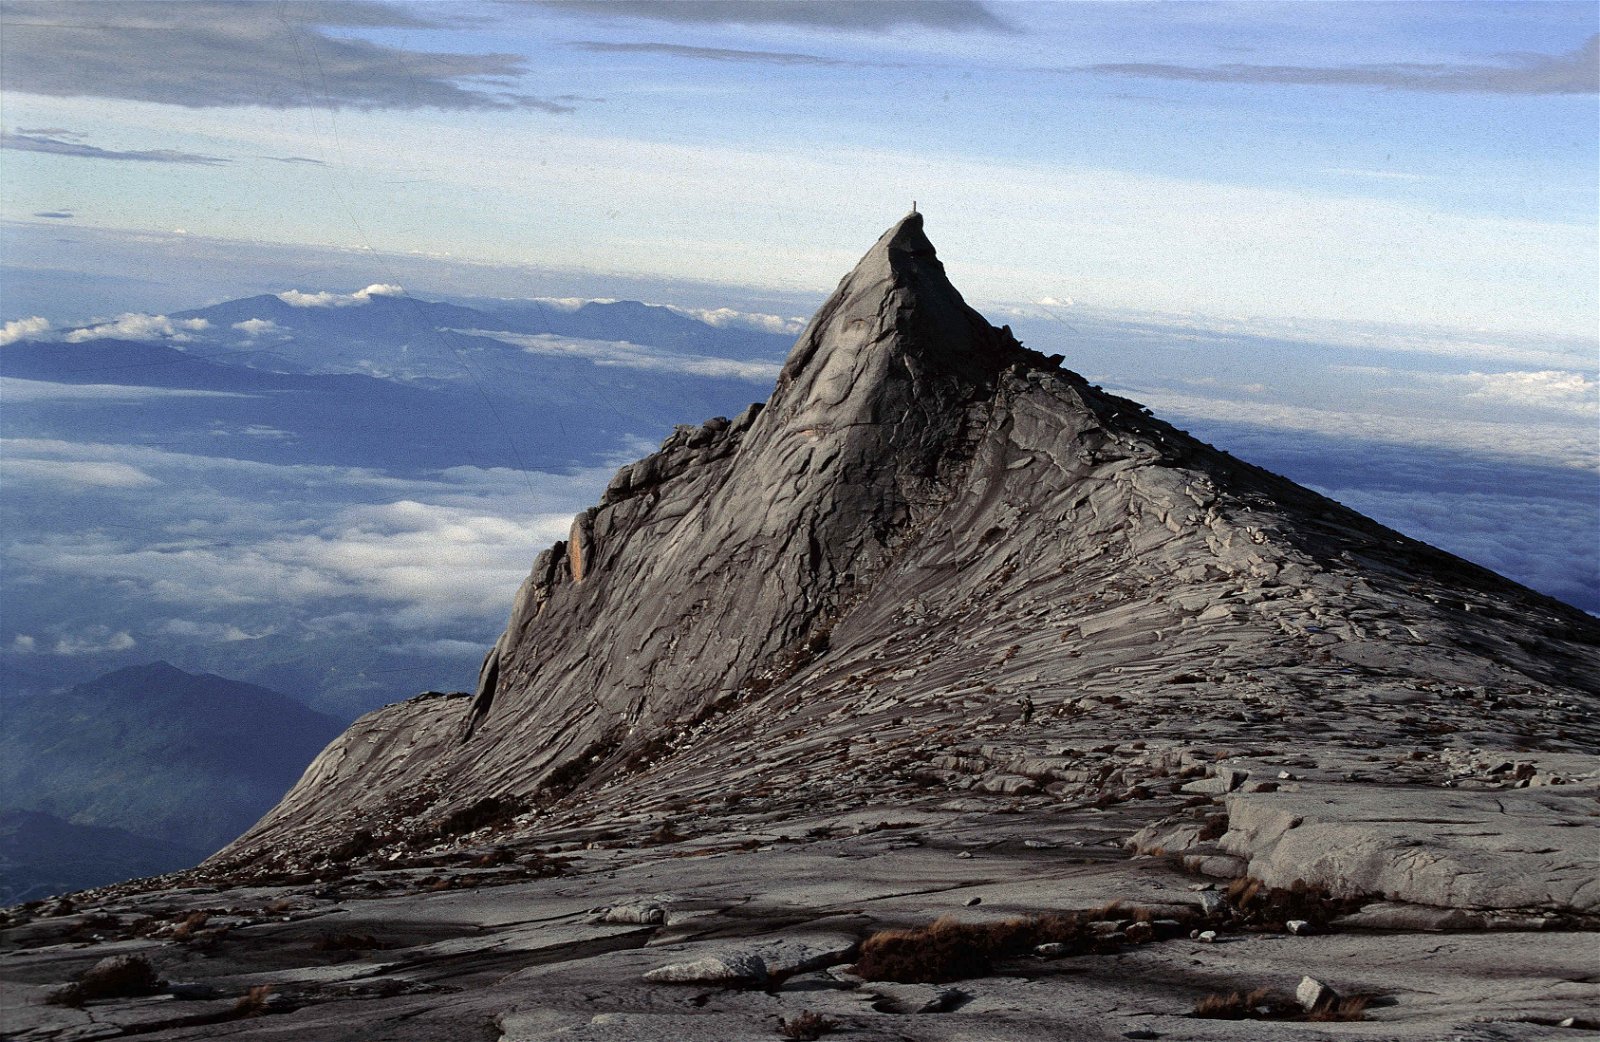 沙巴神山被誉为东南亚第一高峰。（图取自大马观光局）